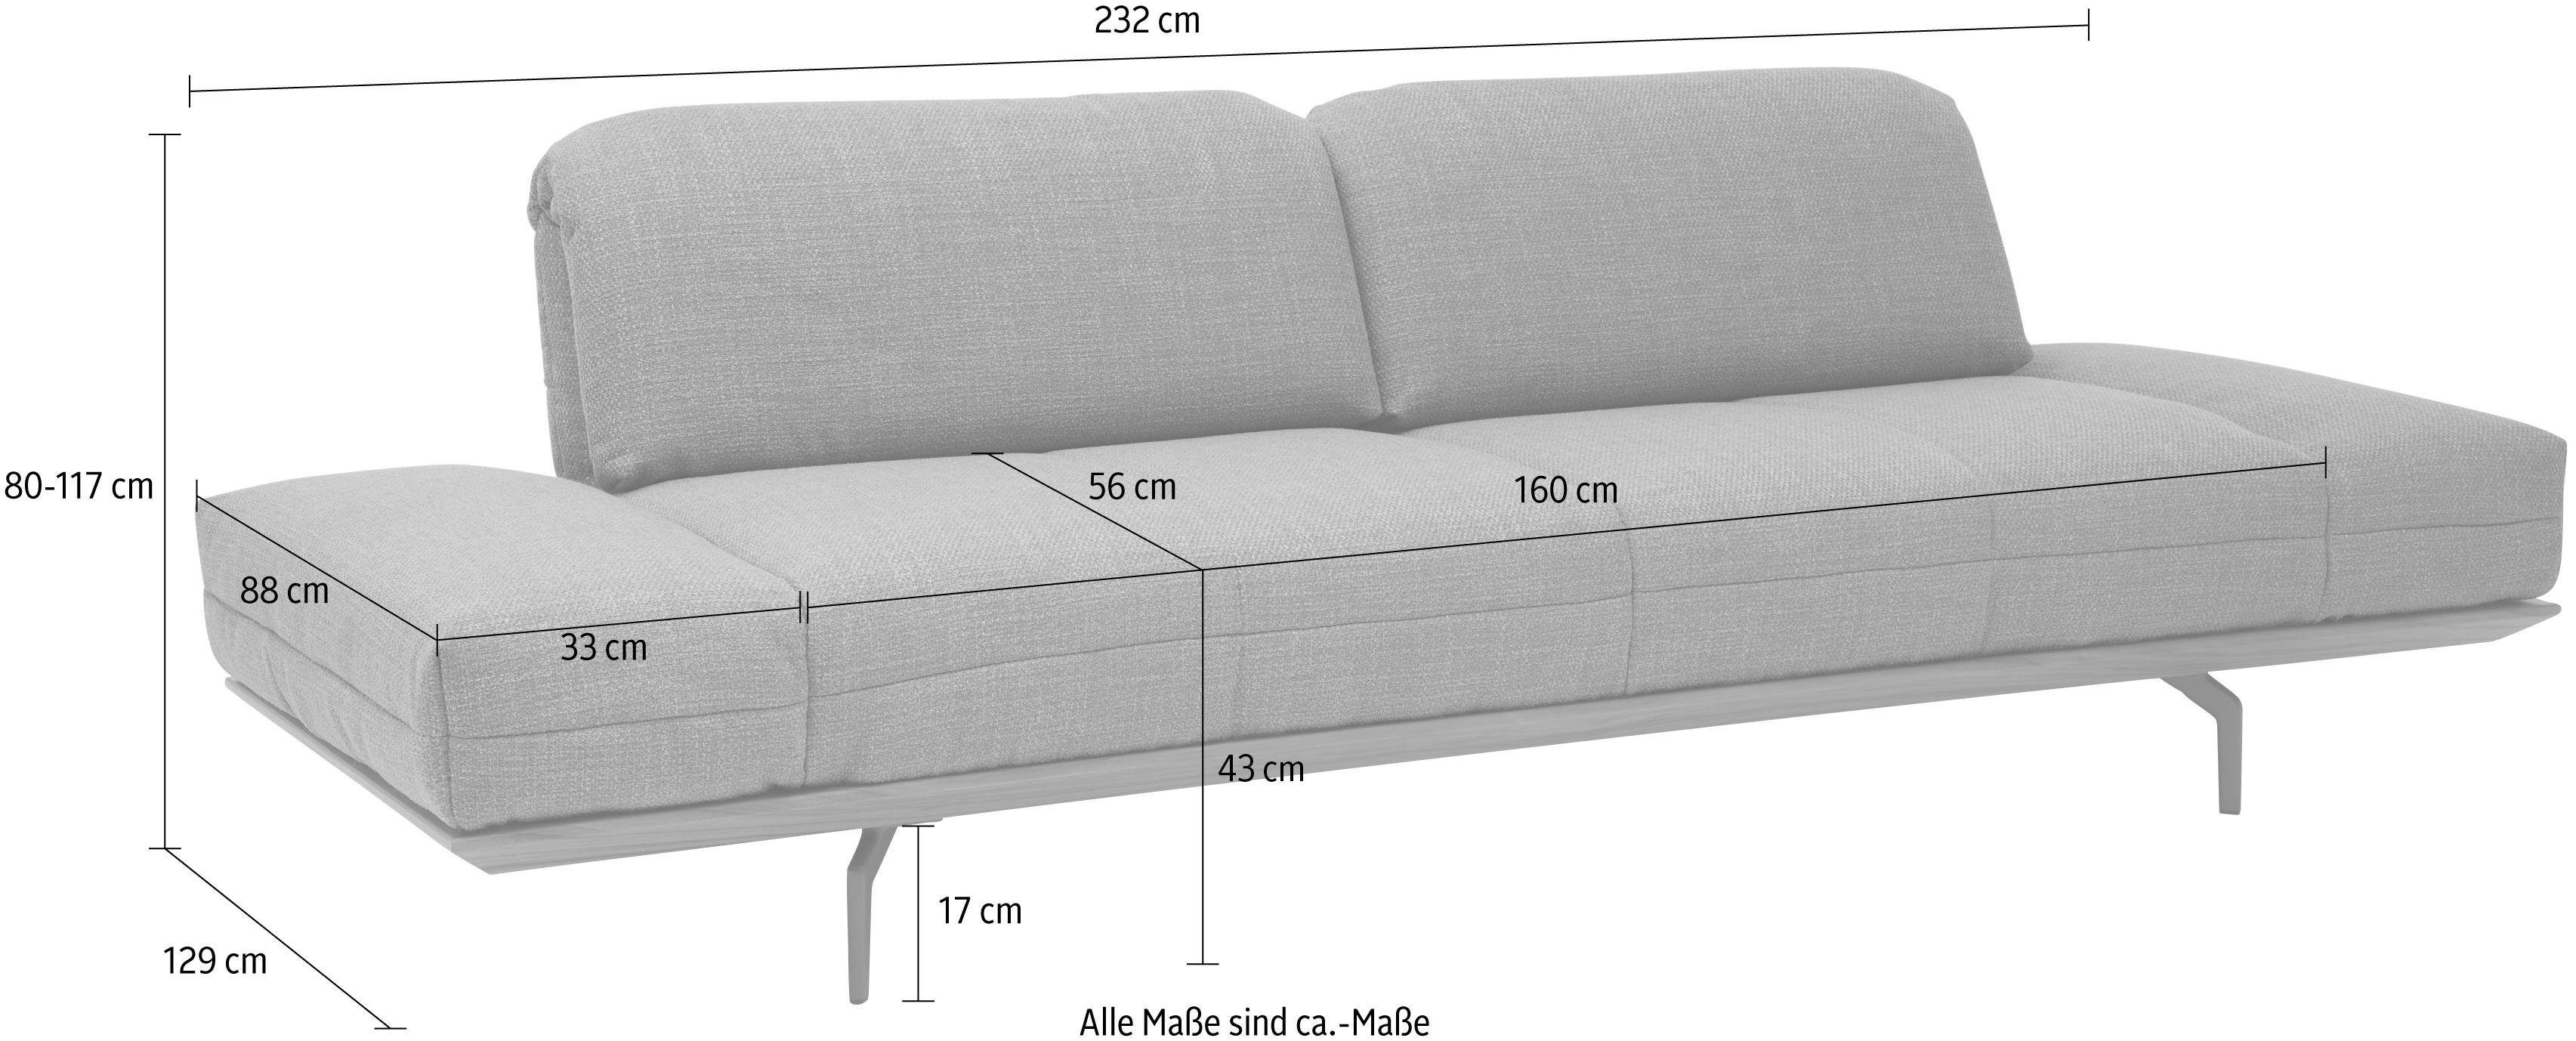 hs.420, in Holzrahmen 232 oder Nußbaum, Eiche cm sofa hülsta Natur 2 in Qualitäten, Breite 3-Sitzer